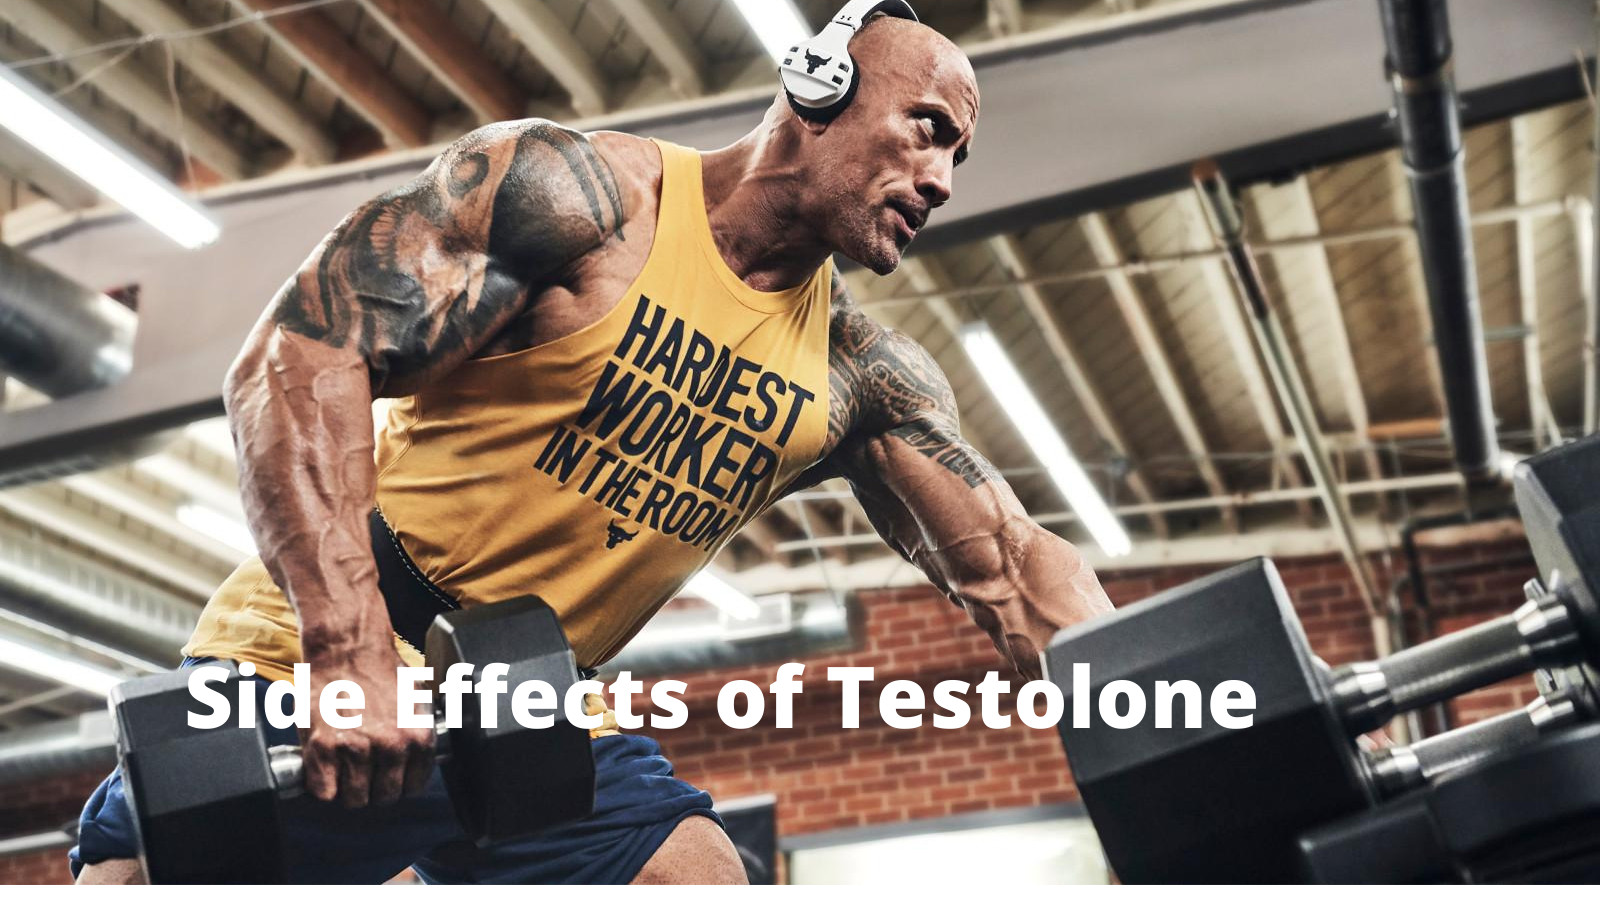 Testolone Side Effects